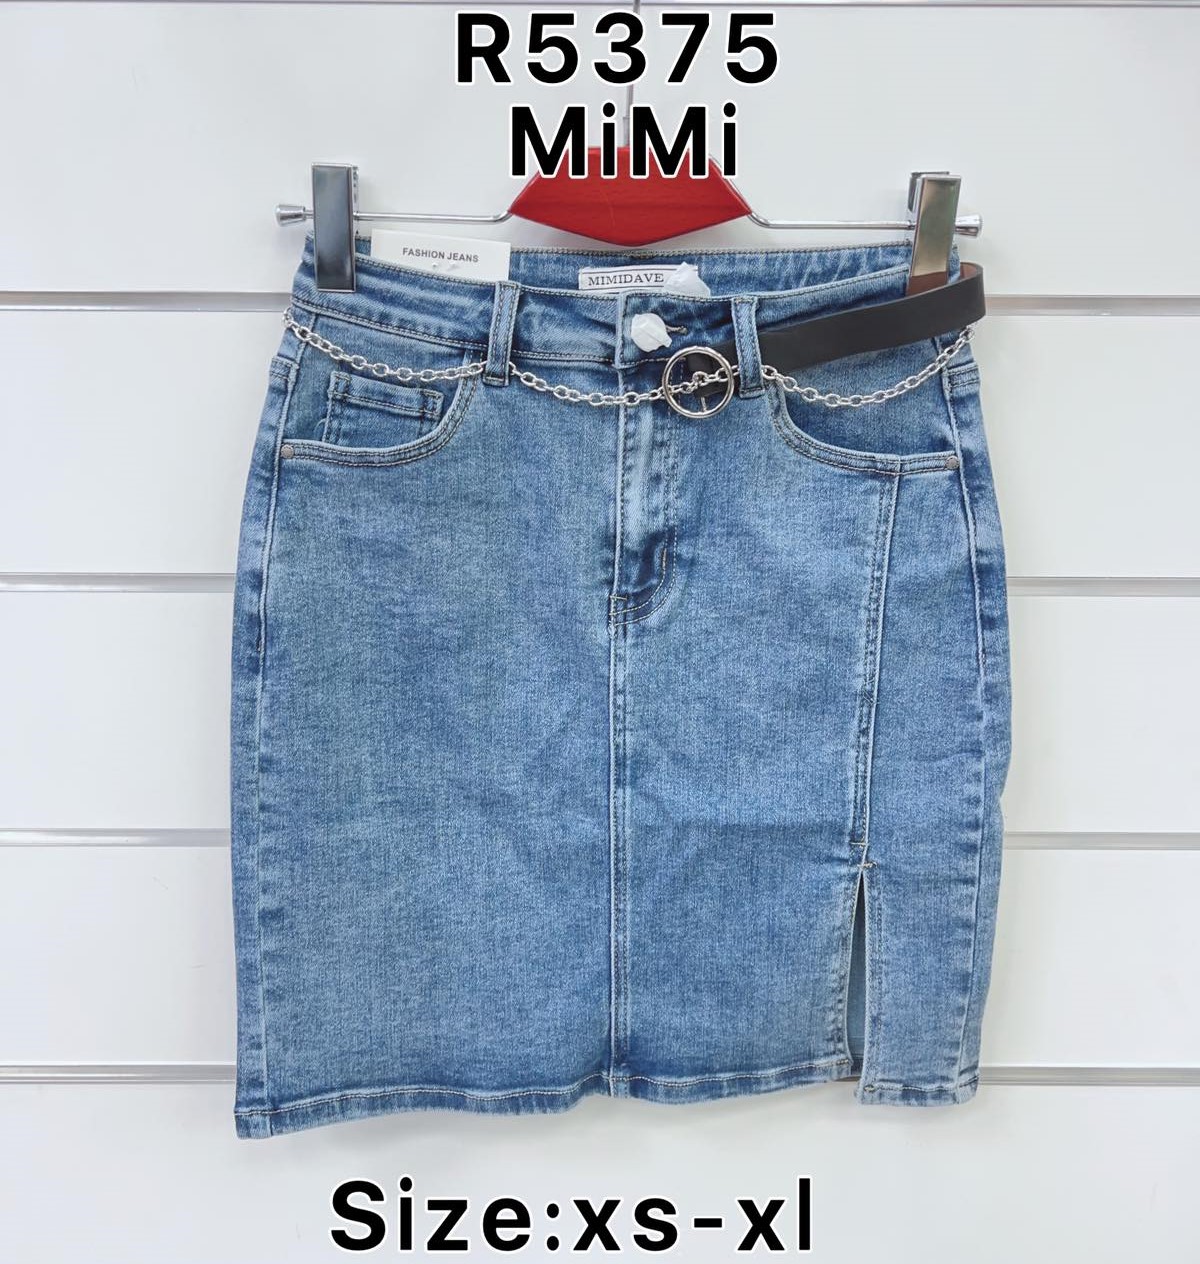 Spódnica  damskie jeans Roz  XS-XL   1 kolor . Paczka 10sz.t